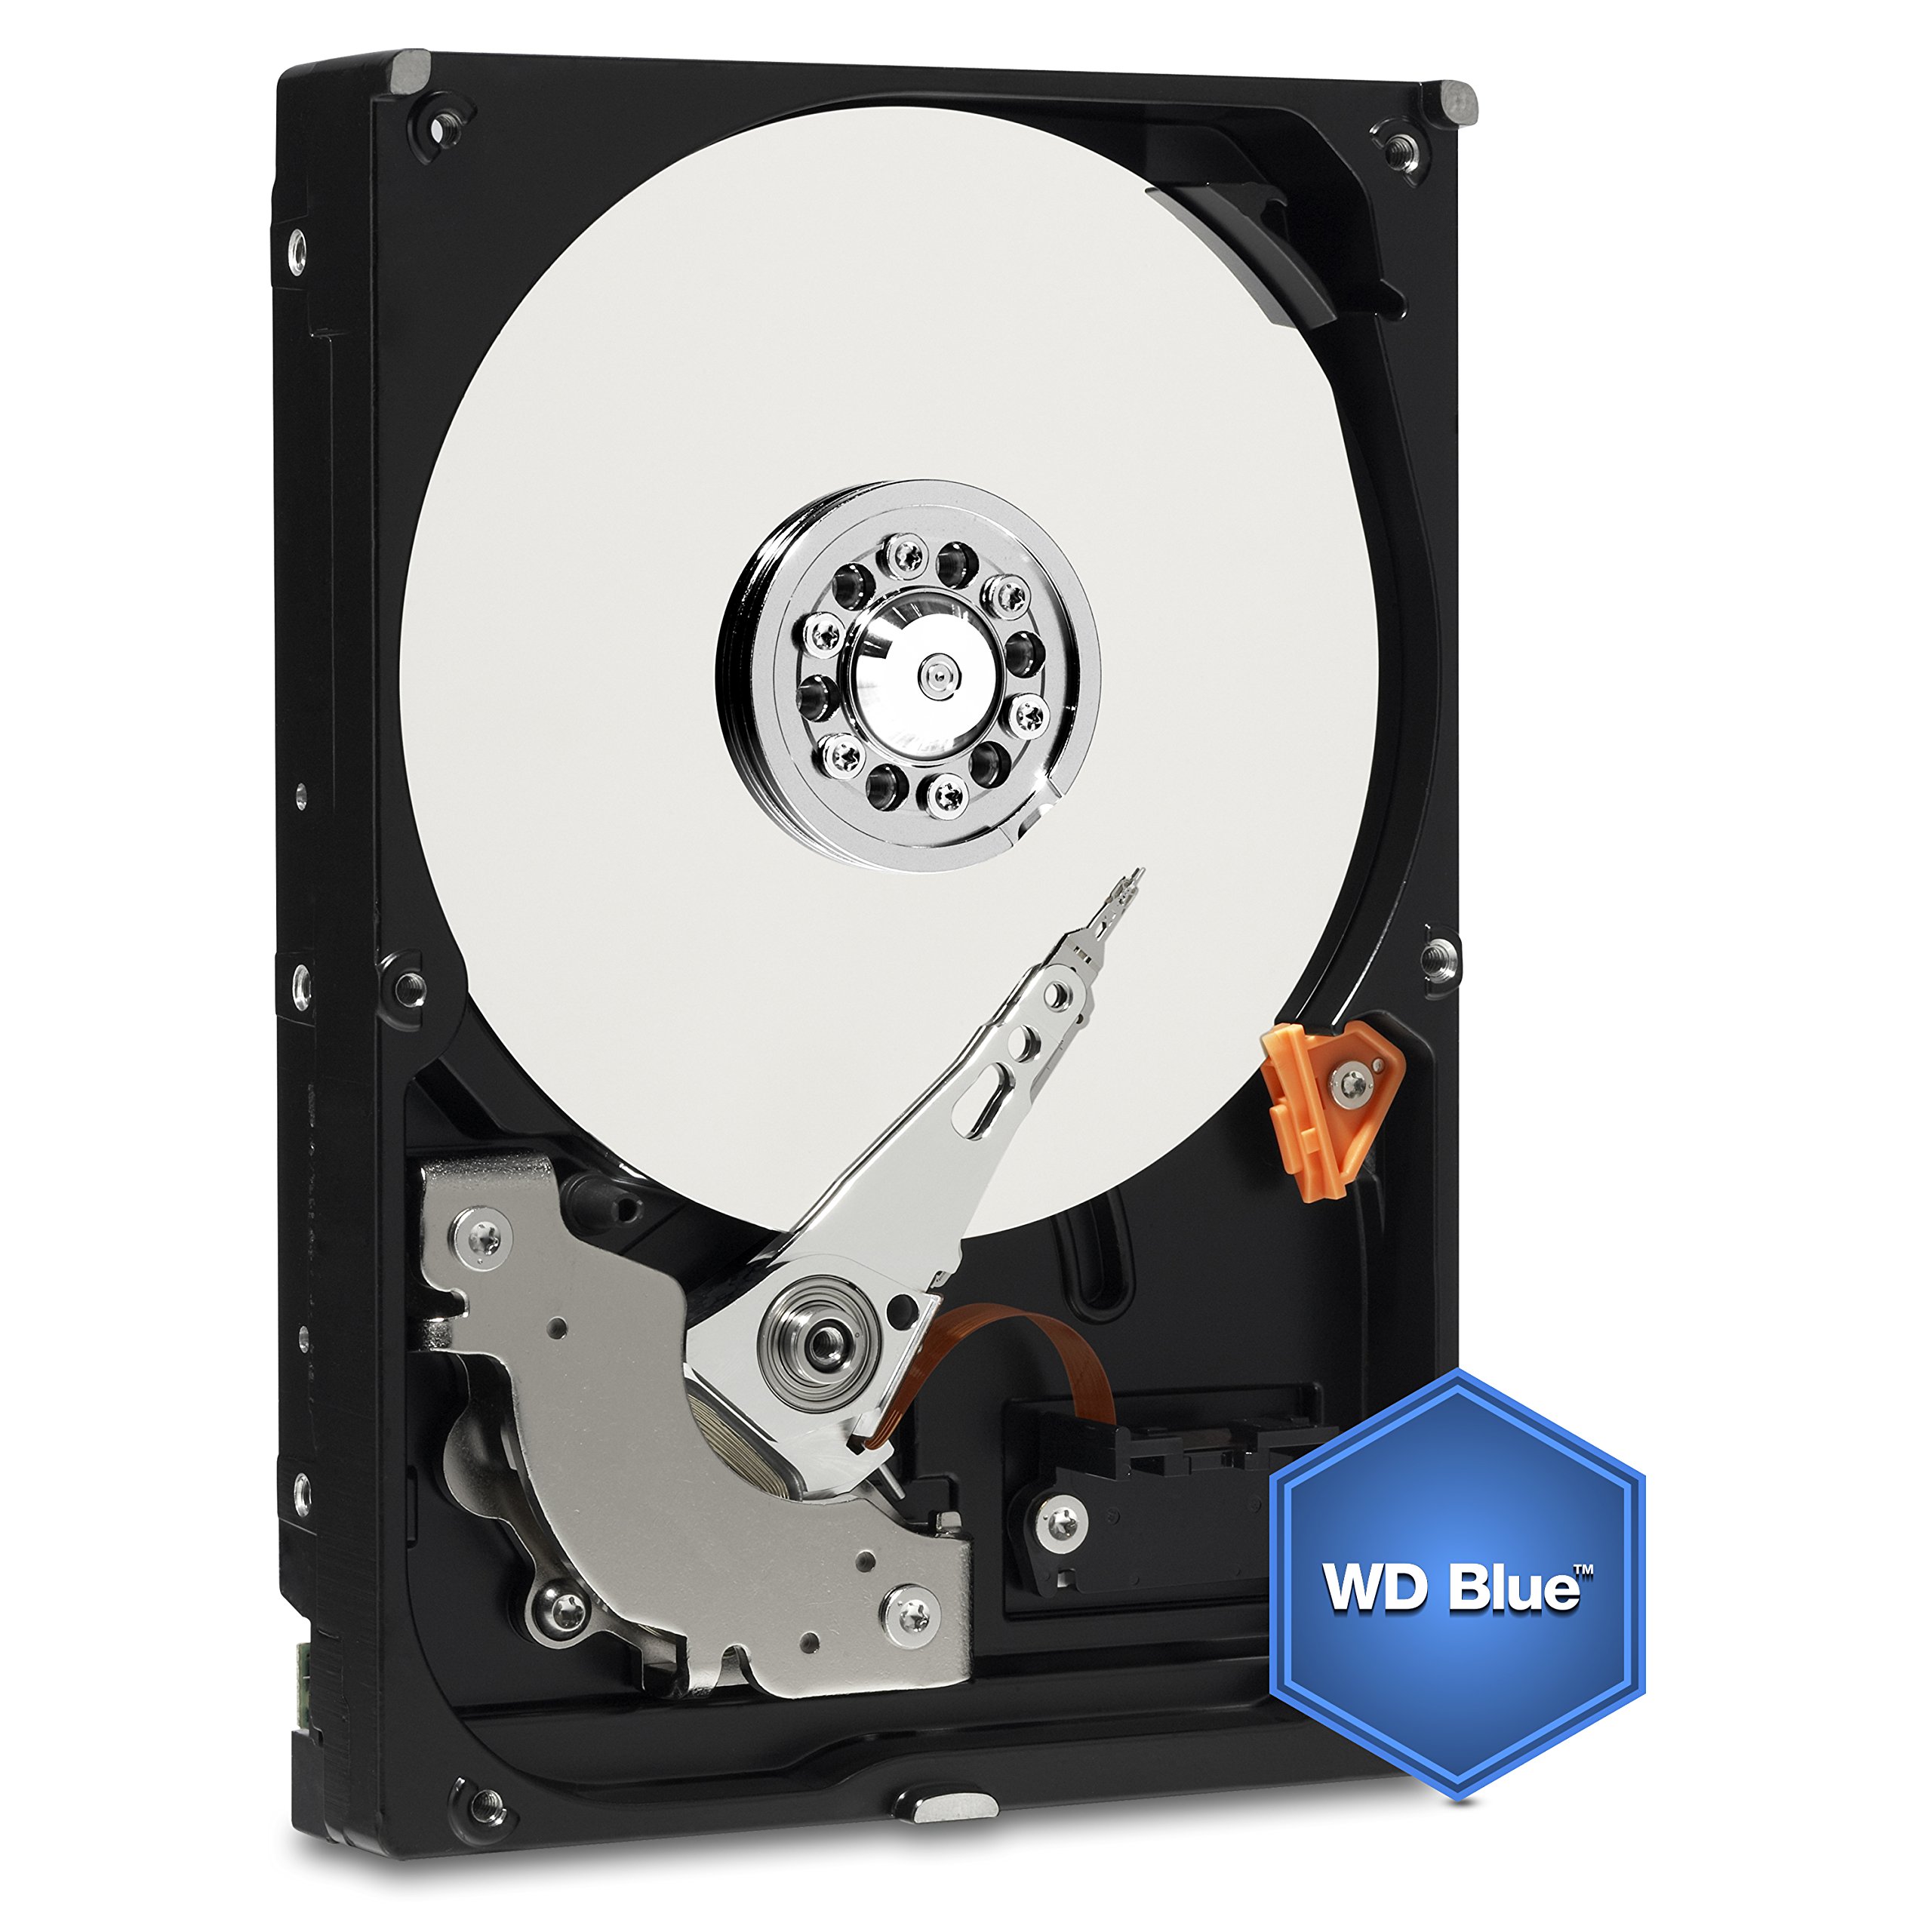 Western Digital 1TB WD Blue PC Internal Hard Drive HDD - 7200 RPM, SATA 6 Gb/s, 64 MB Cache, 3.5